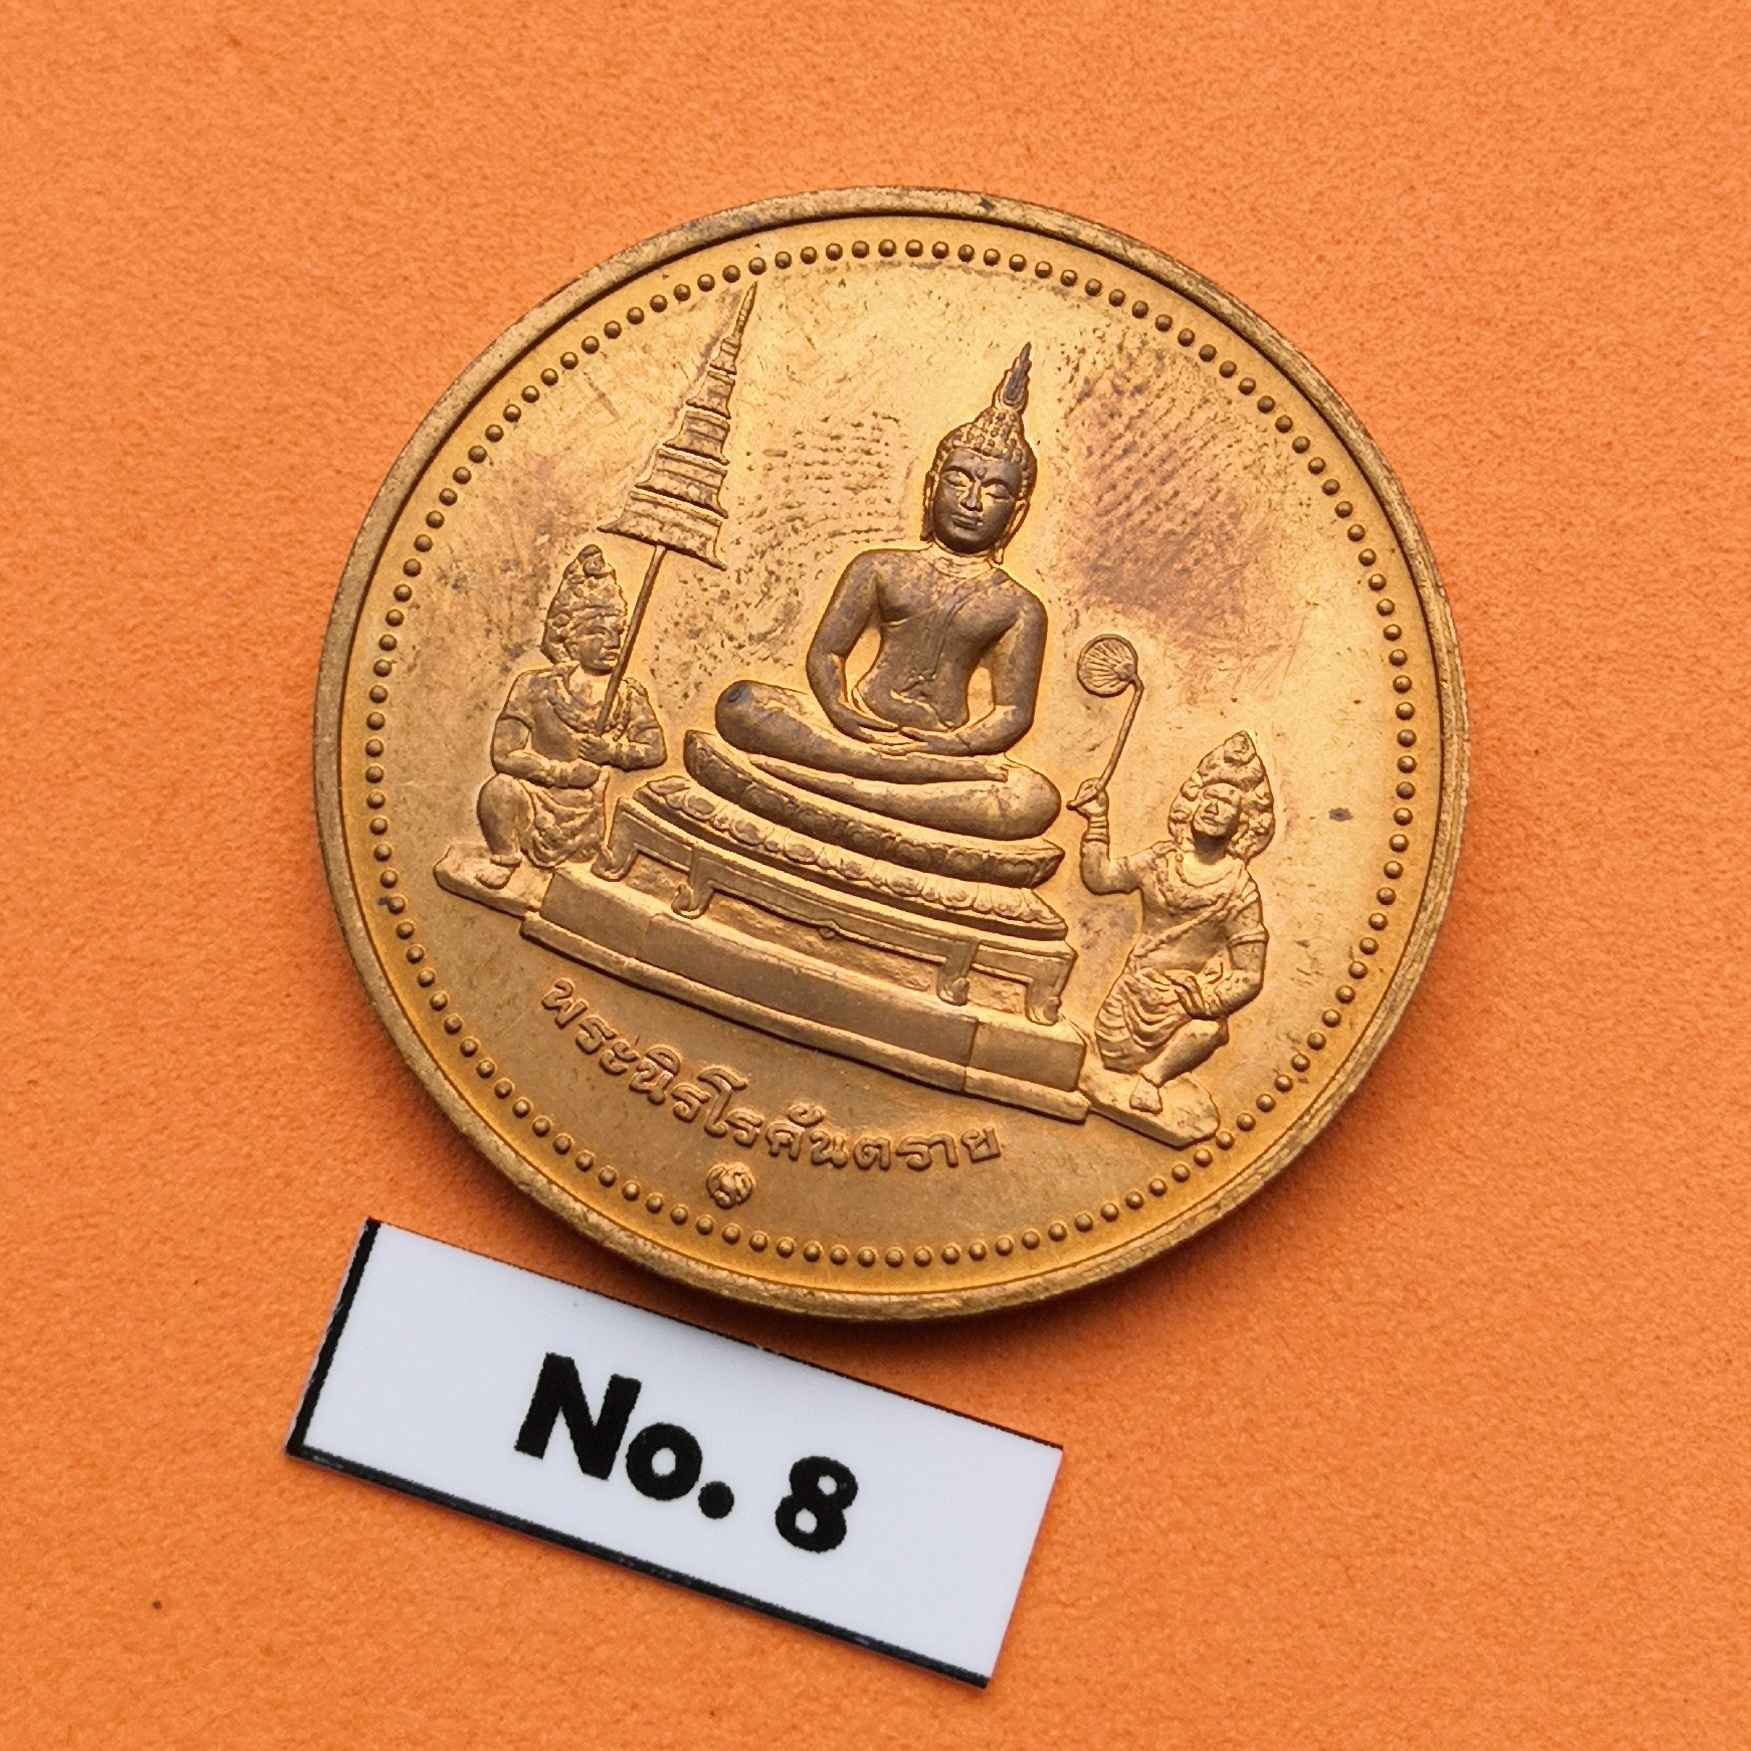 ข้อมูลเพิ่มเติมของ เหรียญท้าวฮู พระนิรโรคันตราย ท้าวหิรัญพนาสูร เทพผู้พิทักษ์รัชกาลที่ 6 ที่ระลึกในวโรกาสฉลองพระบรมราชสมภพ 120 ปี พระมงกุฏเกล้า